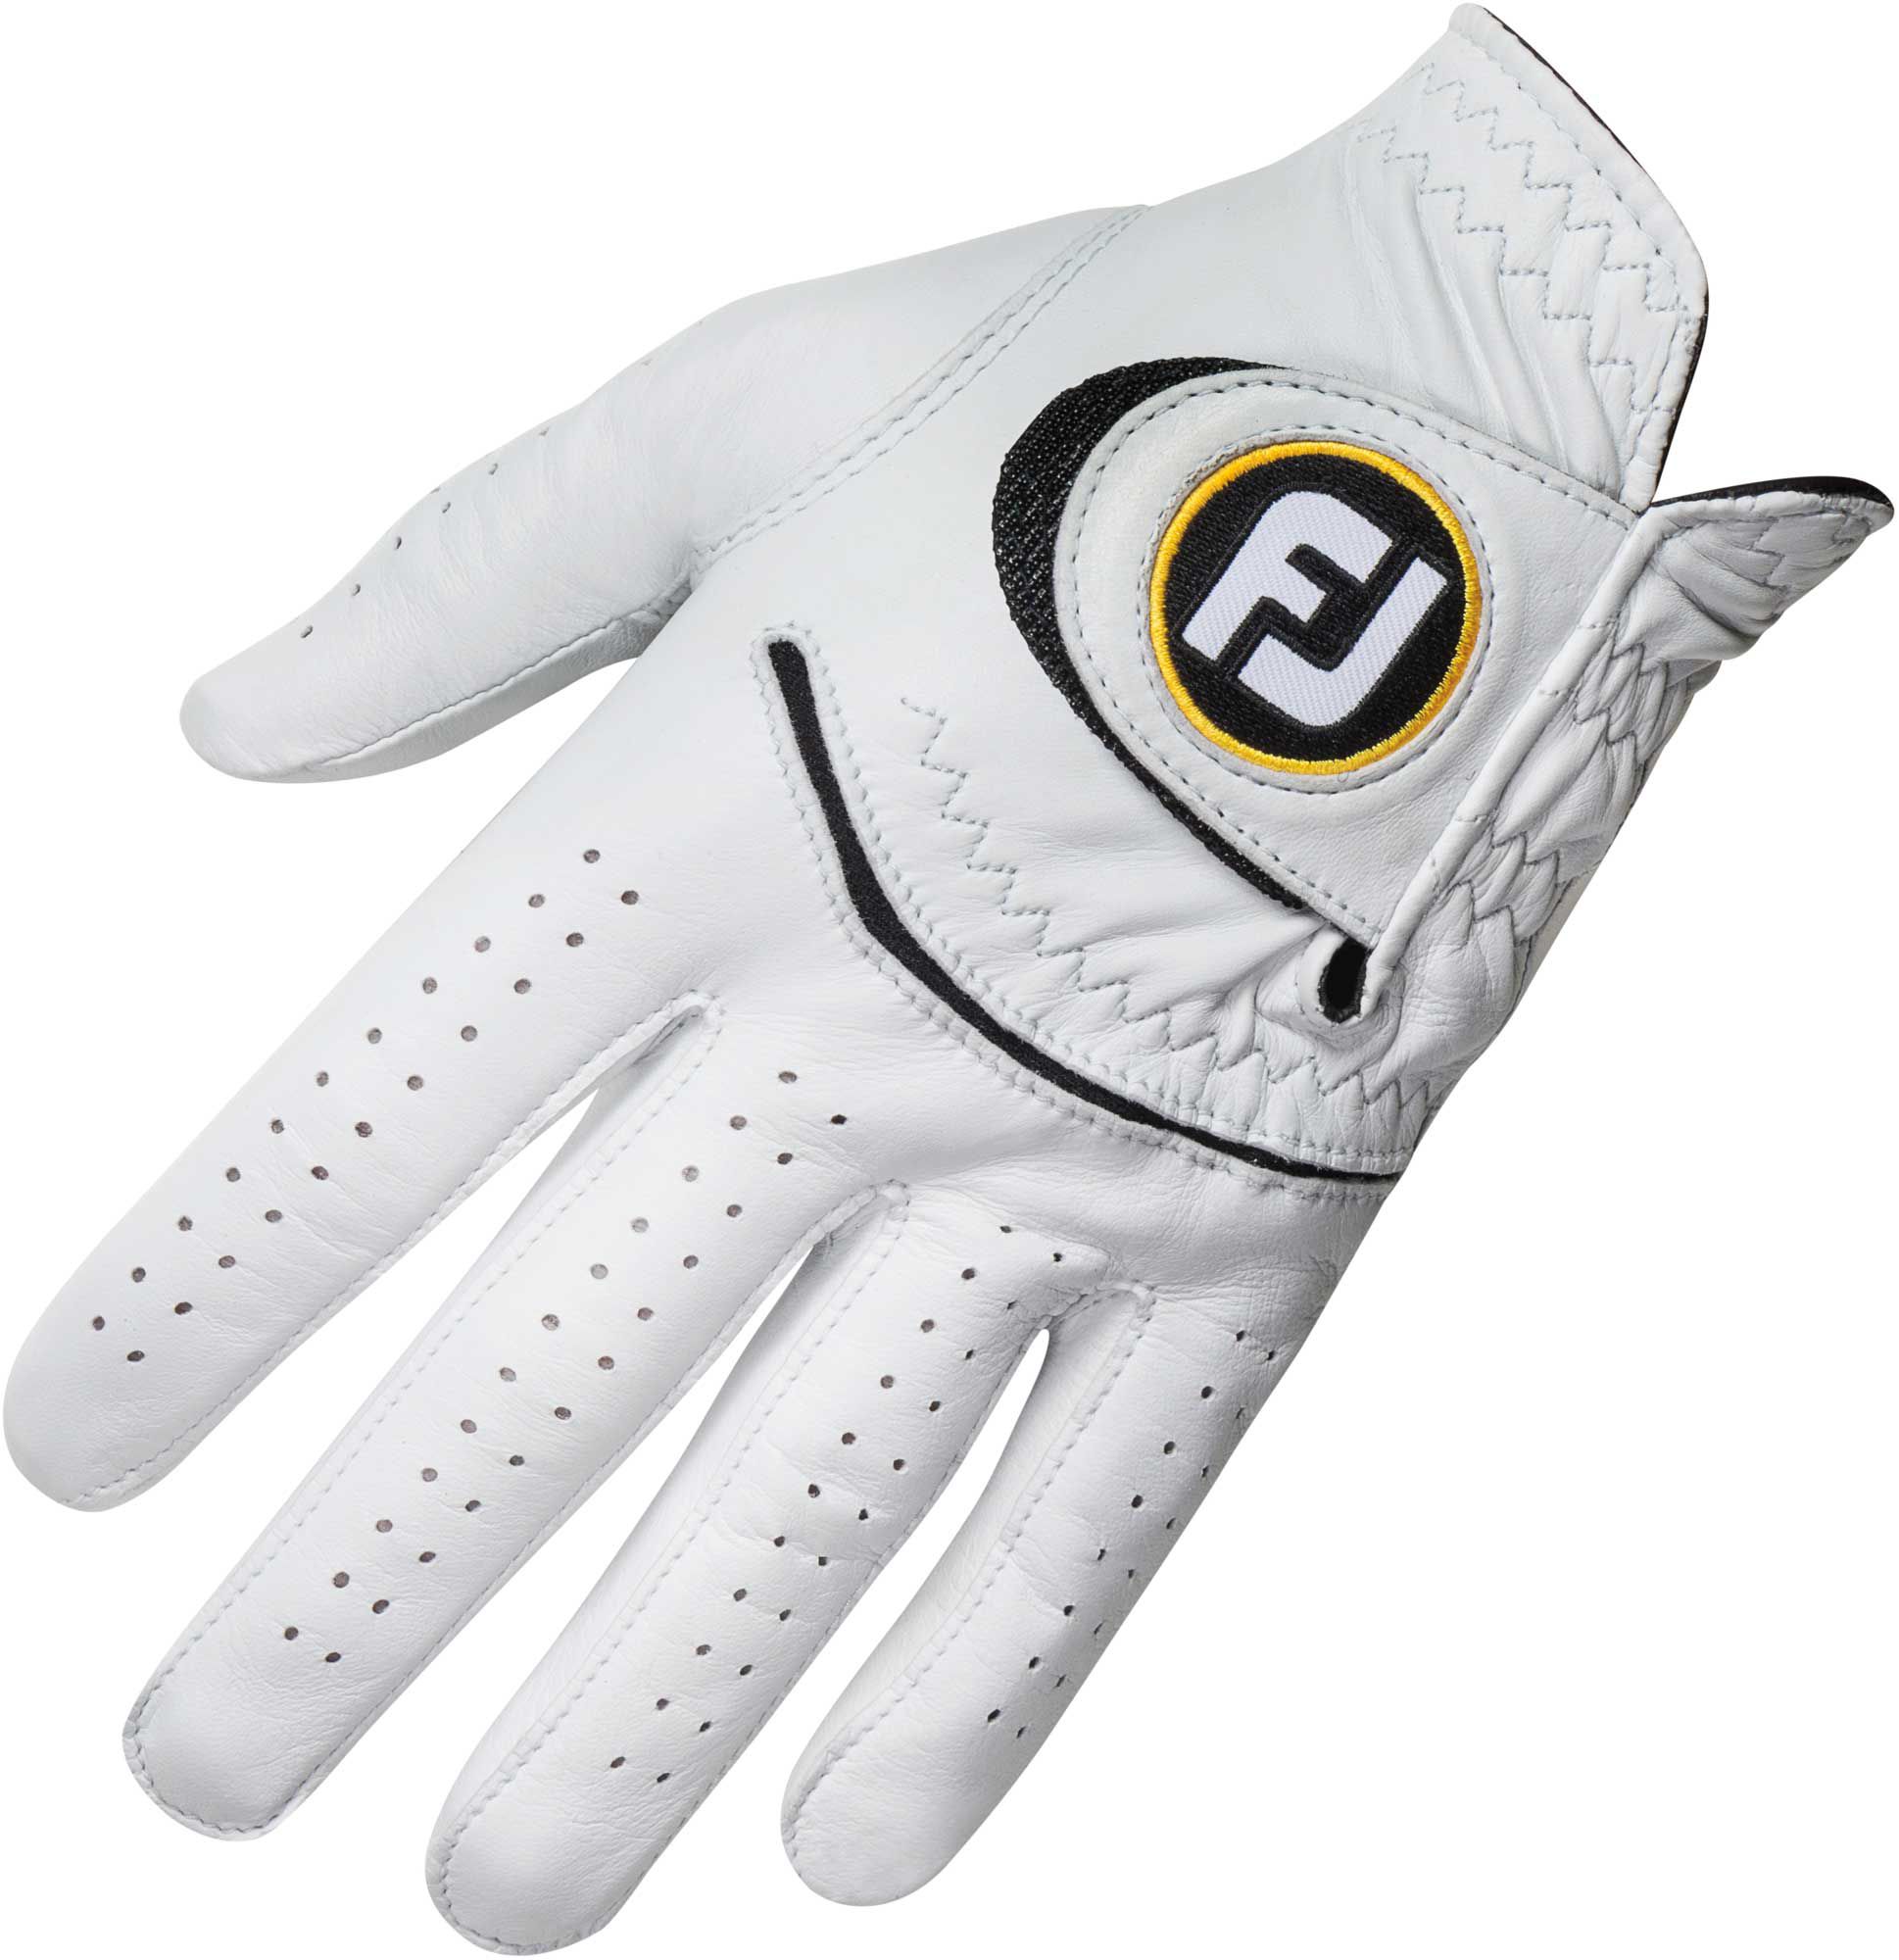 adidas golf gloves sale